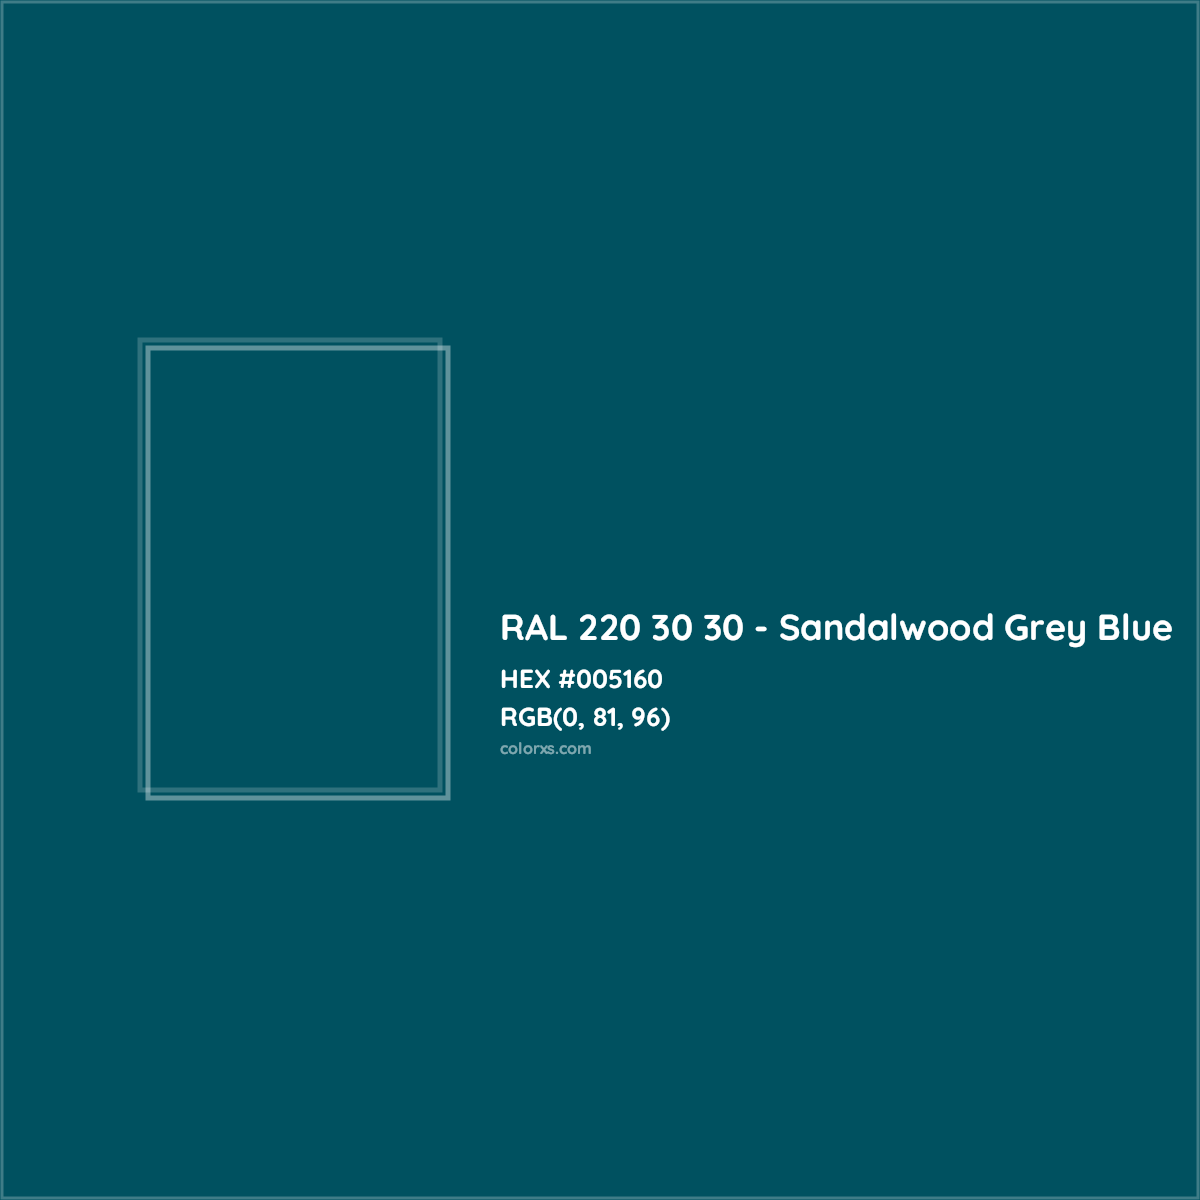 HEX #005160 RAL 220 30 30 - Sandalwood Grey Blue CMS RAL Design - Color Code